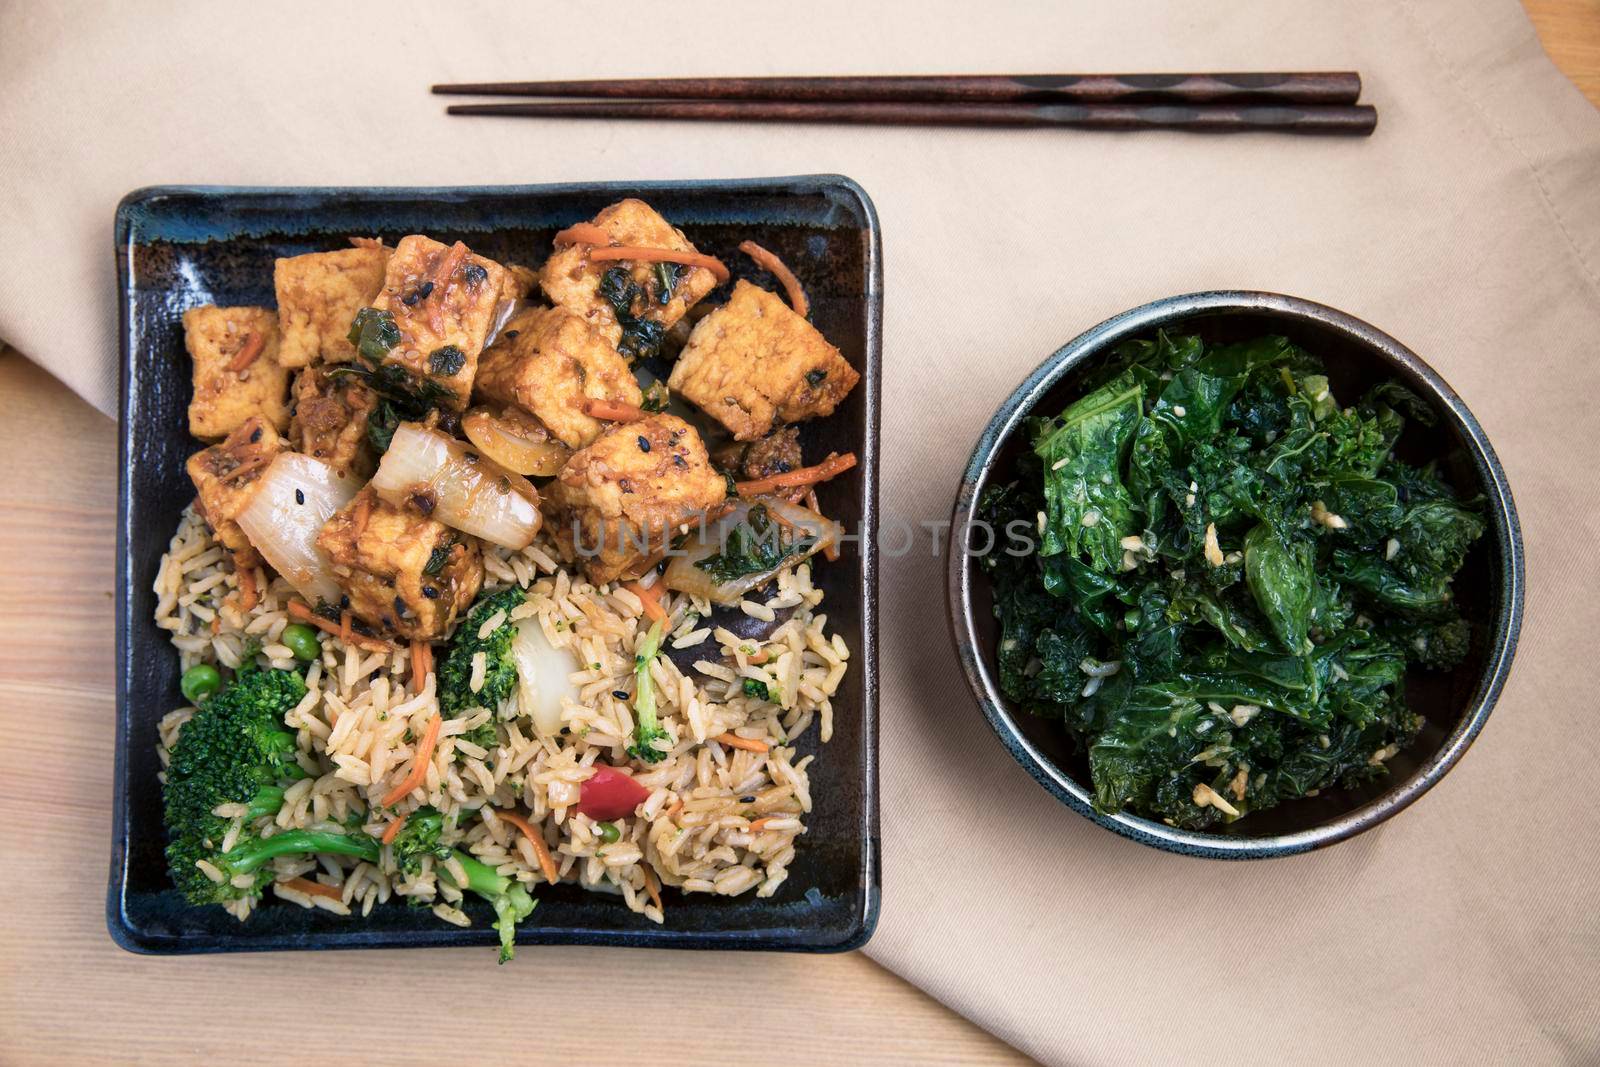 Vegan Asian Dinner by charlotteLake